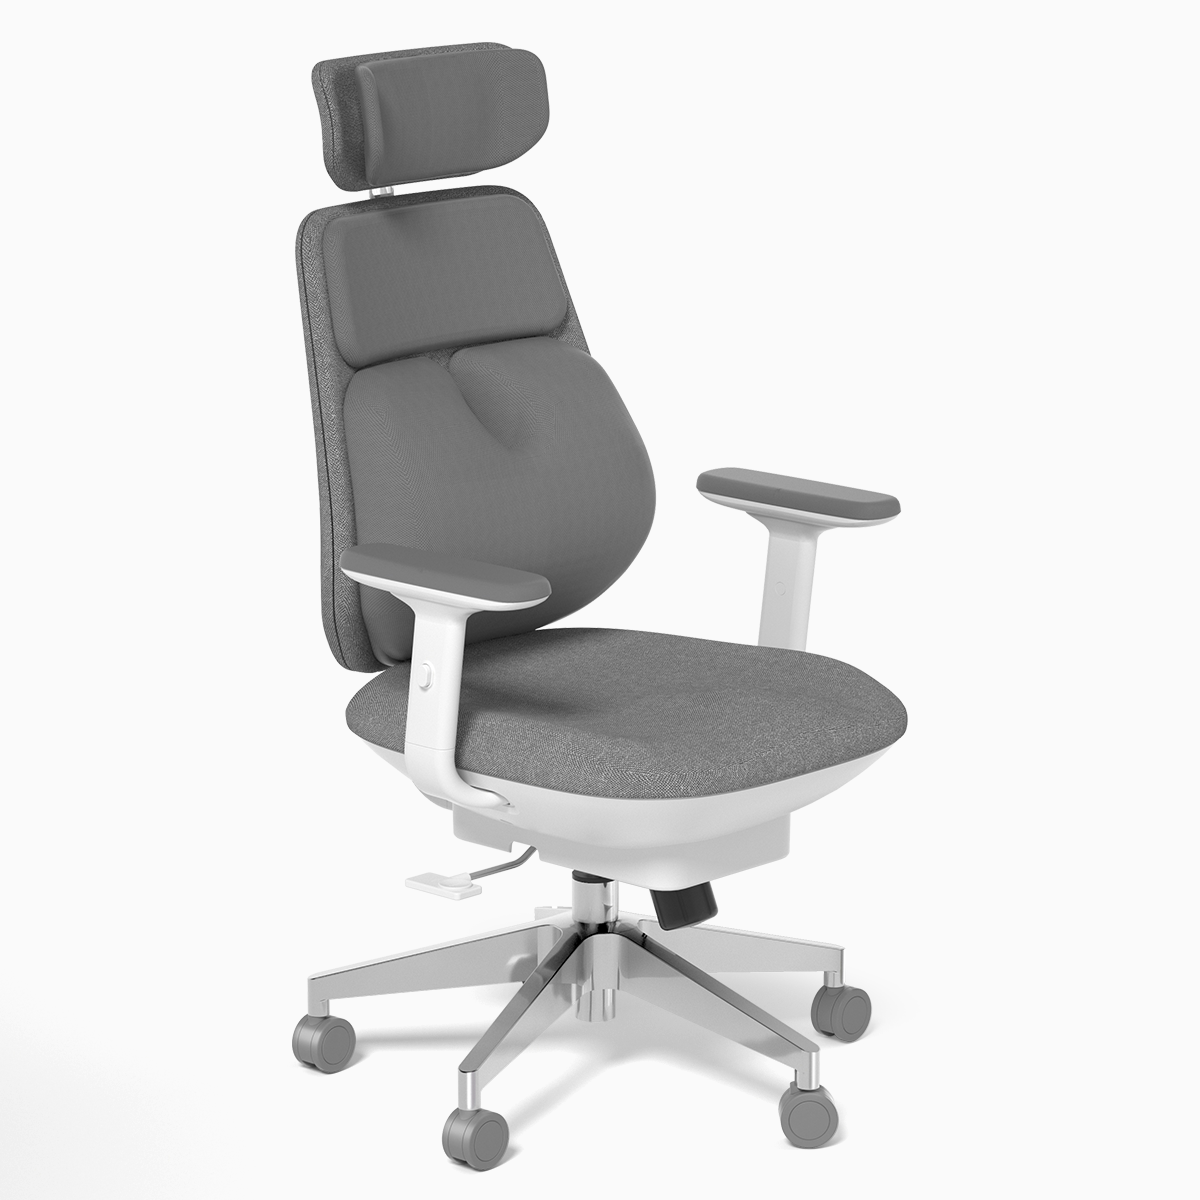 KingSmith Air Smart Office Chair